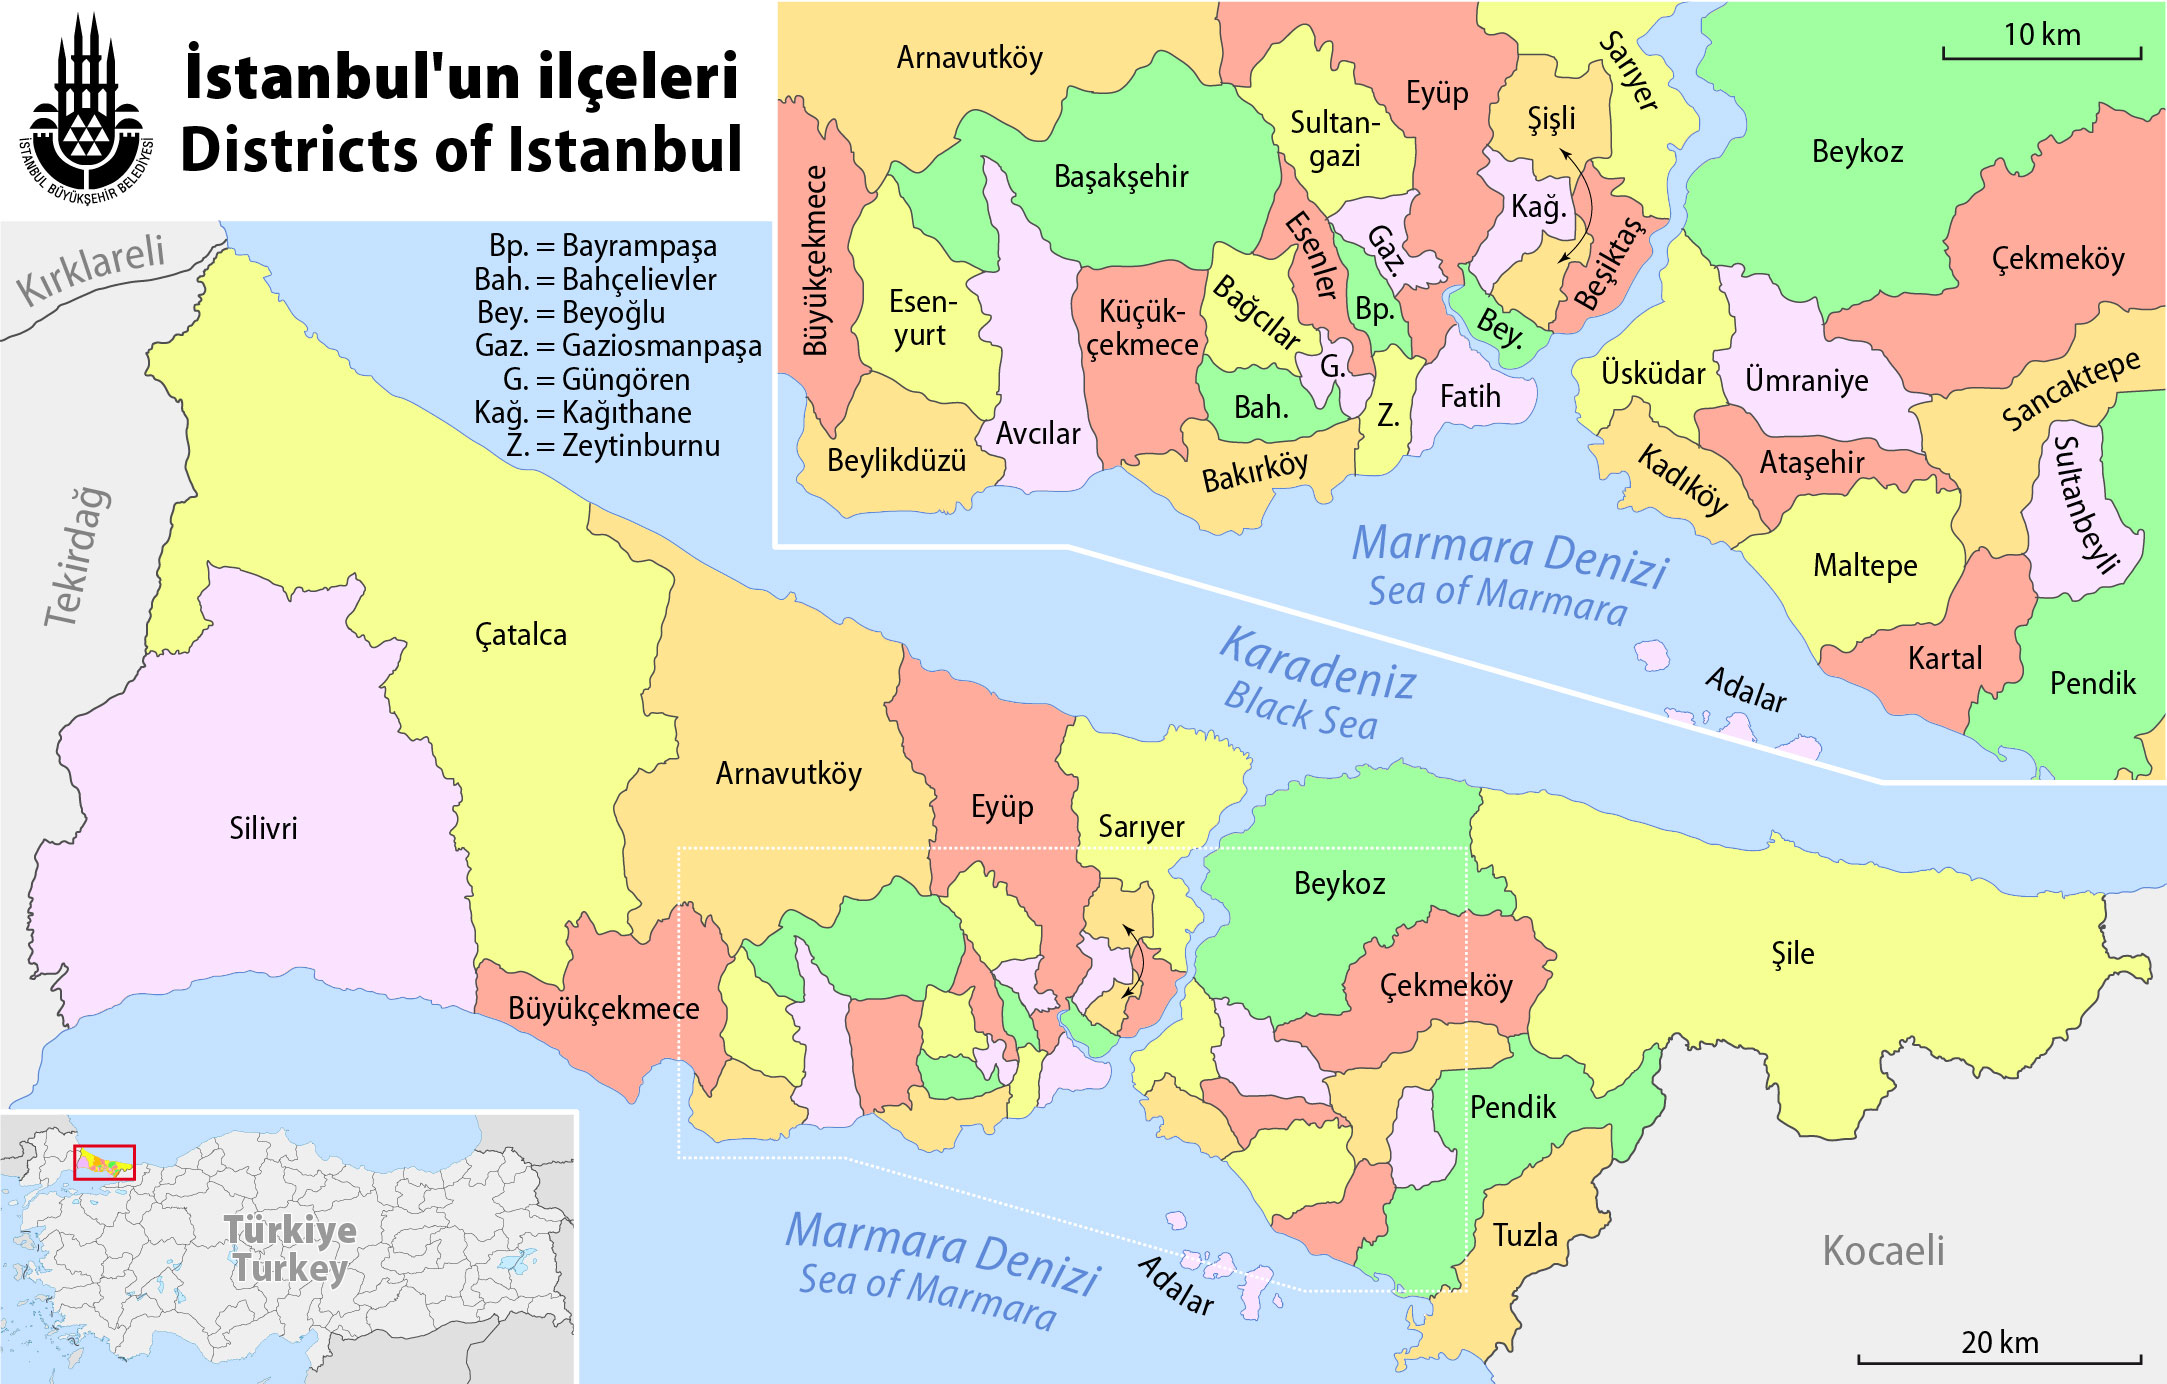 istanbul ili 2015 yili cevre durum raporu